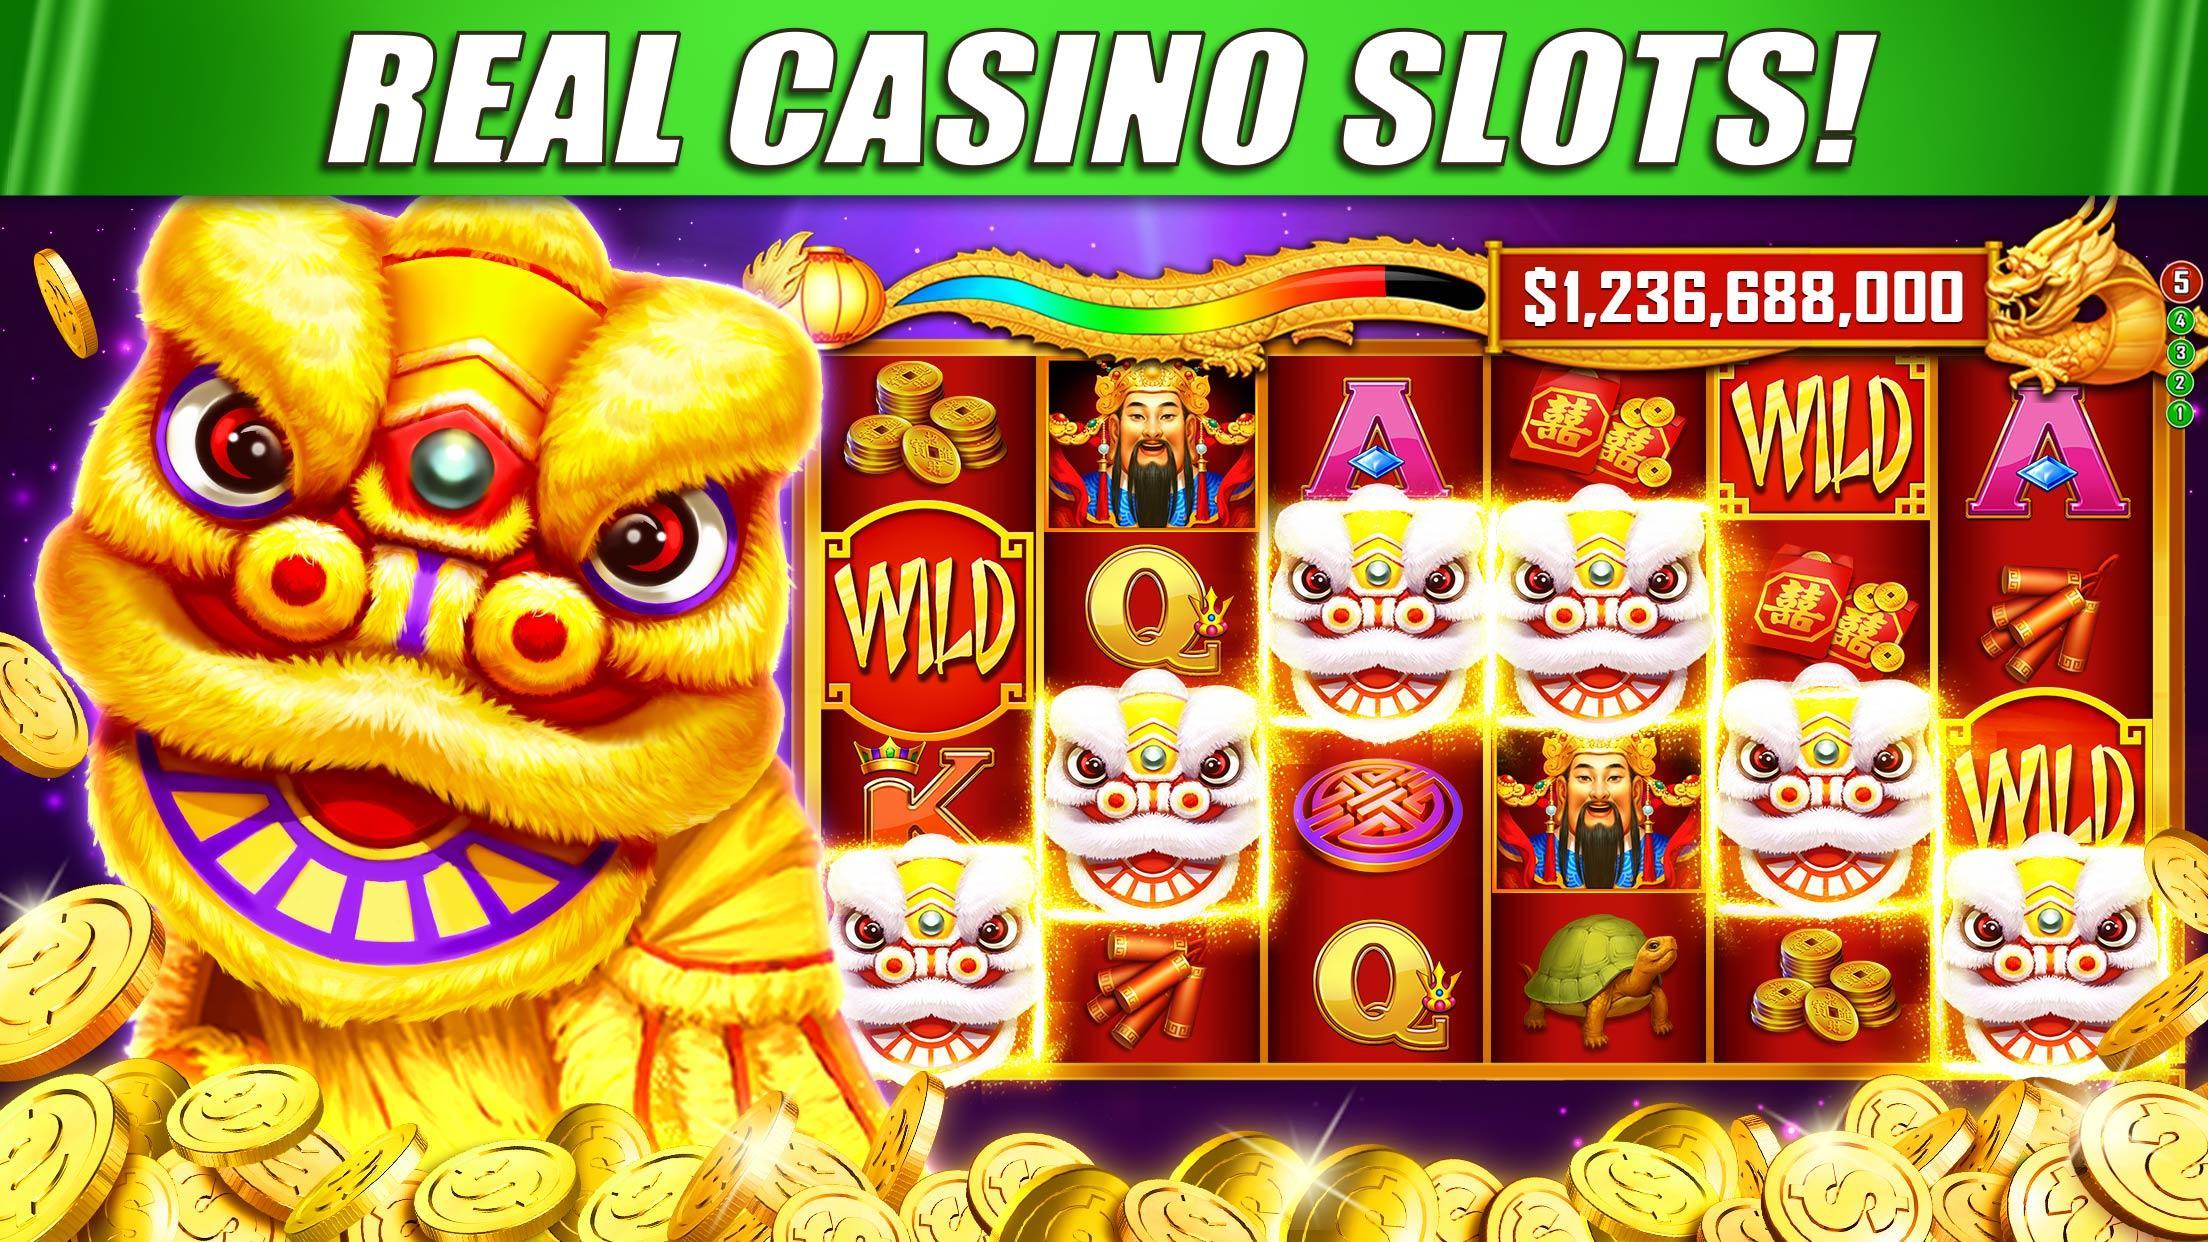 Casino Slots Machine Online Games - The Best No Registration Casinos Of ...